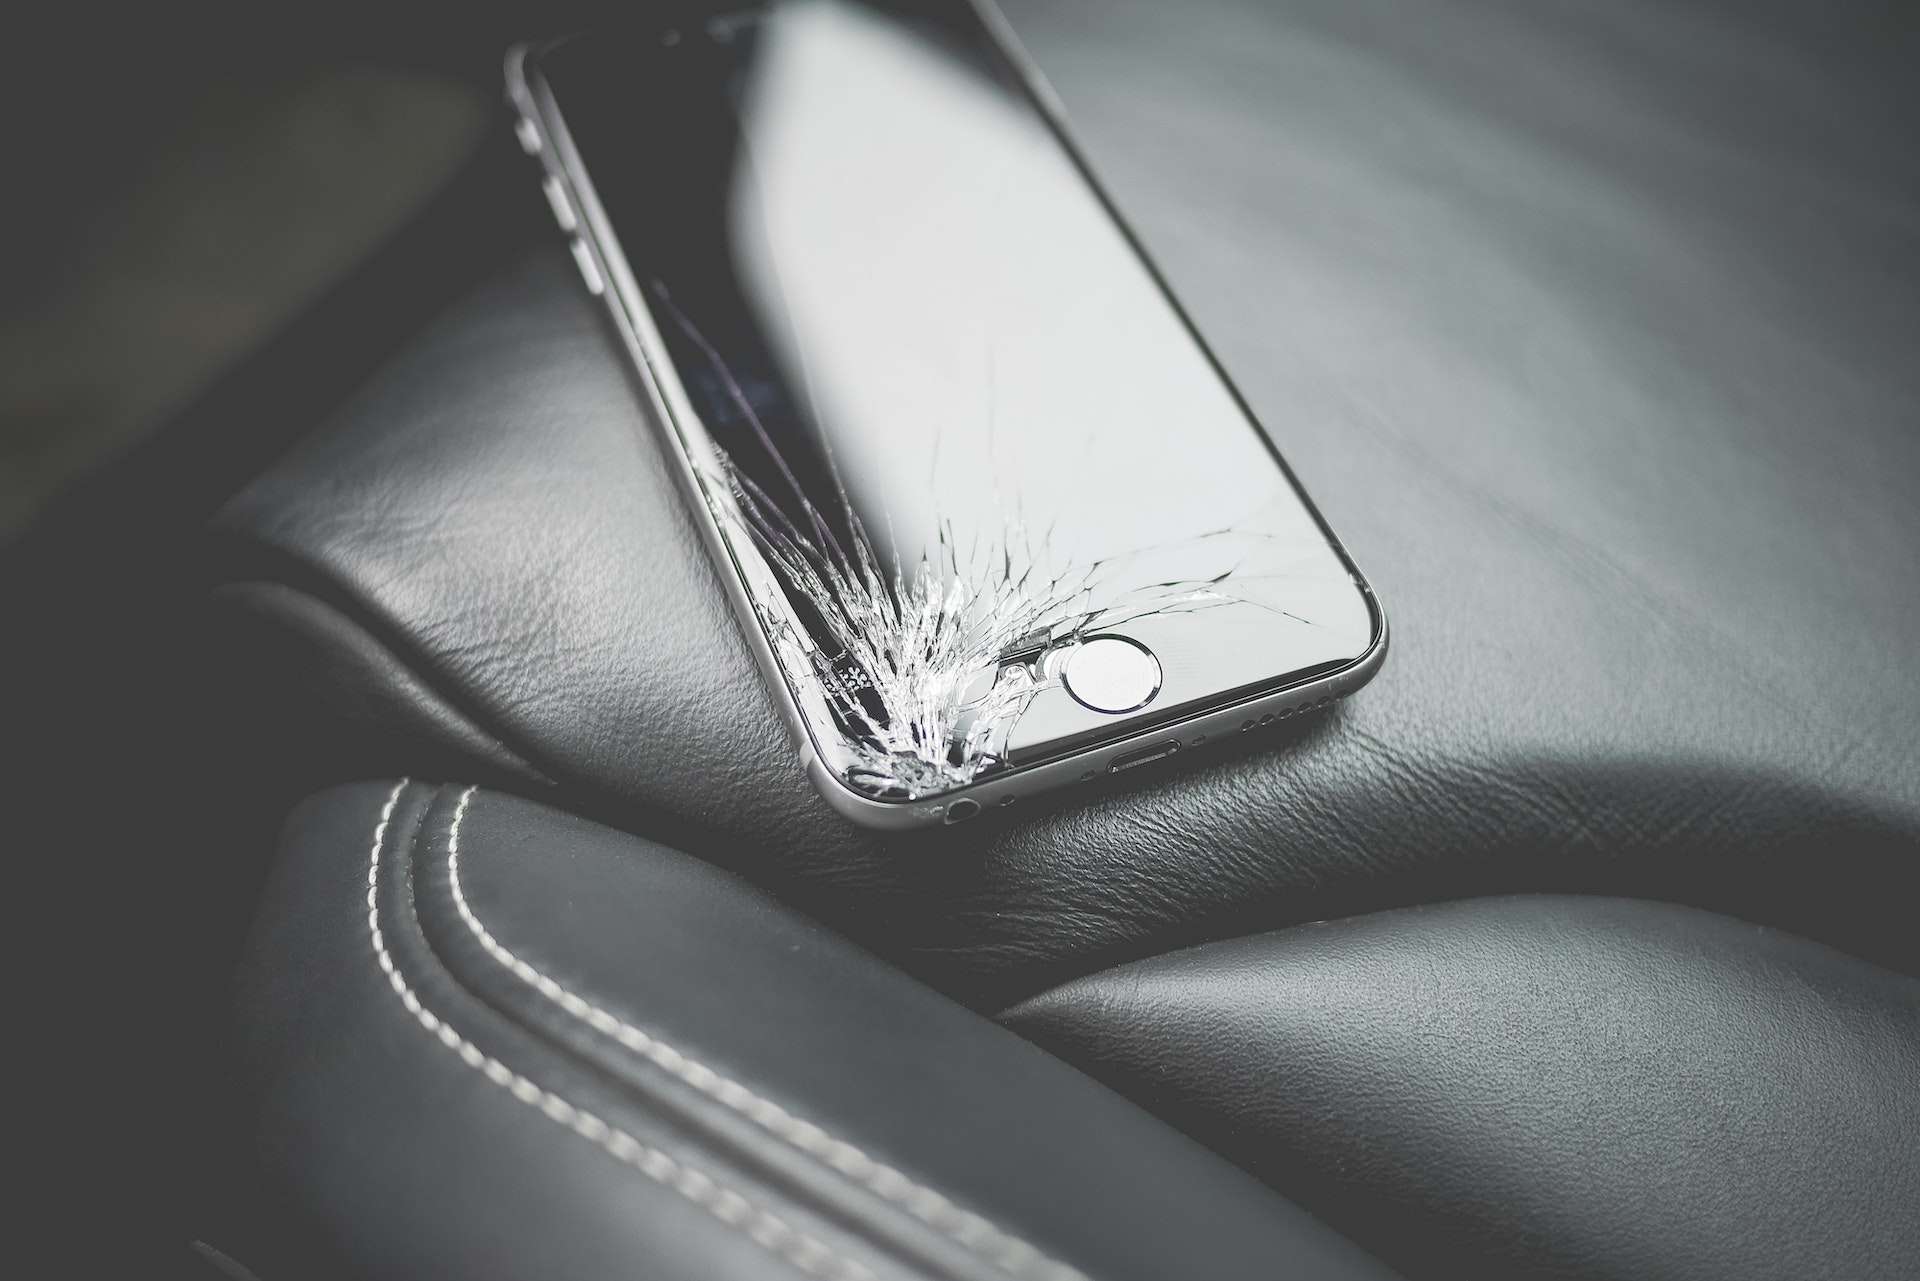 Réparer une vitre cassée (smartphone, vitre voiture) 